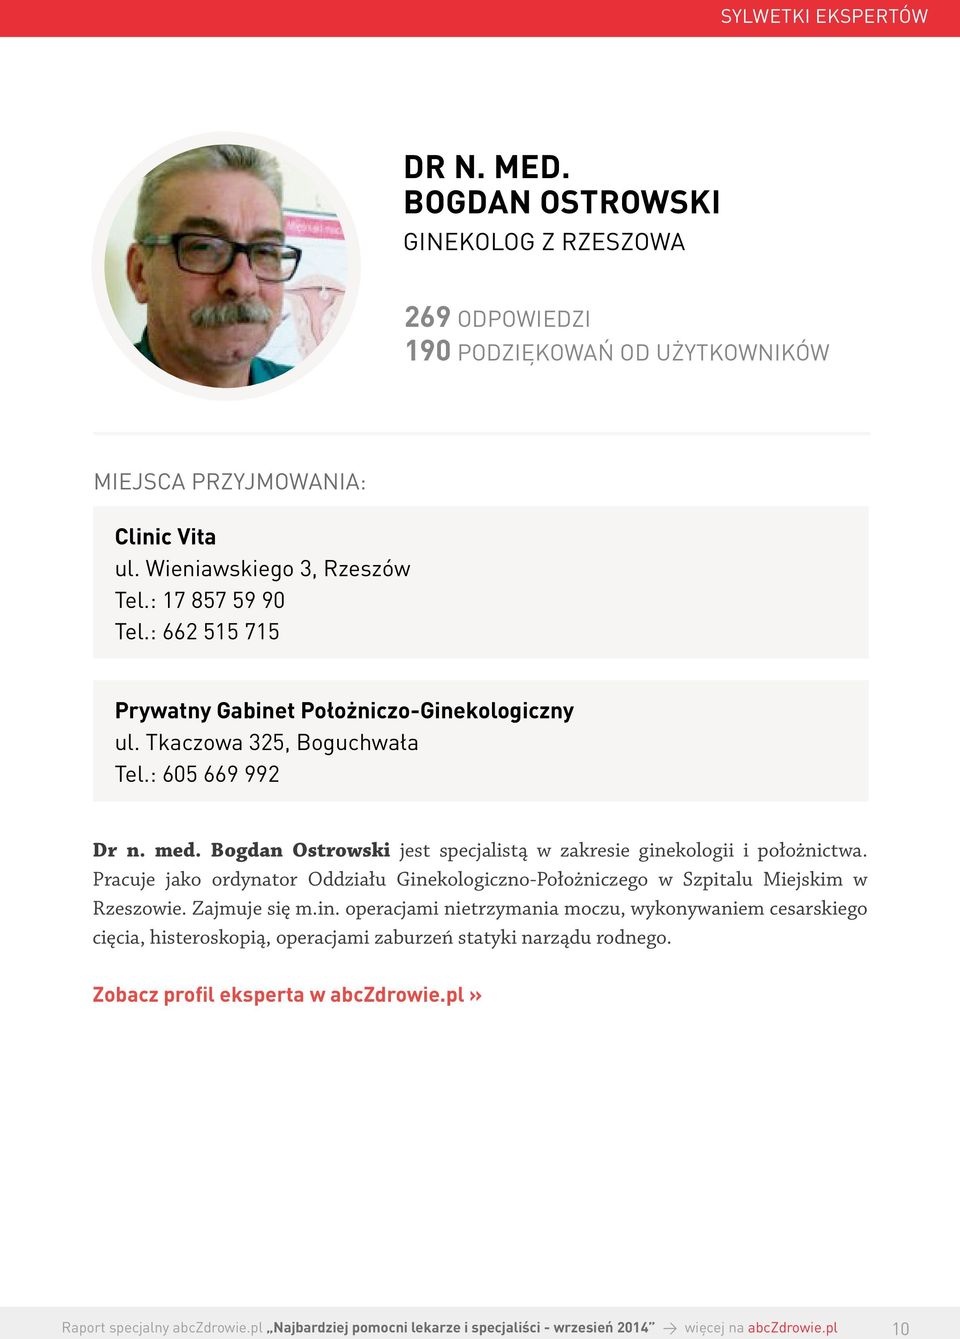 Bogdan Ostrowski jest specjalistą w zakresie ginekologii i położnictwa.